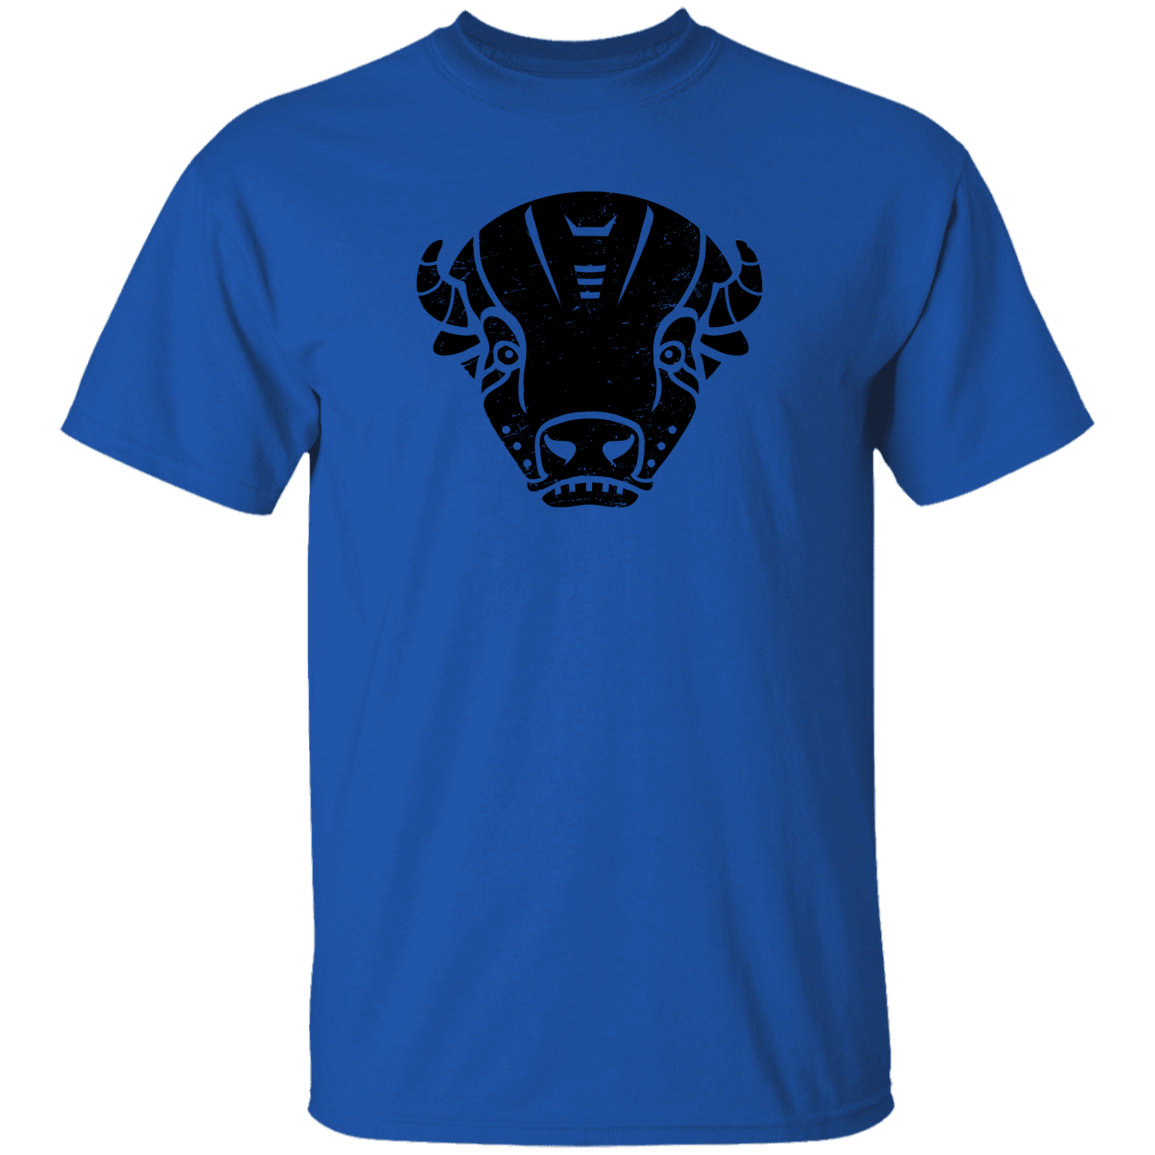 Black Distressed Emblem T-Shirt for Kids (Bison/Panzer)